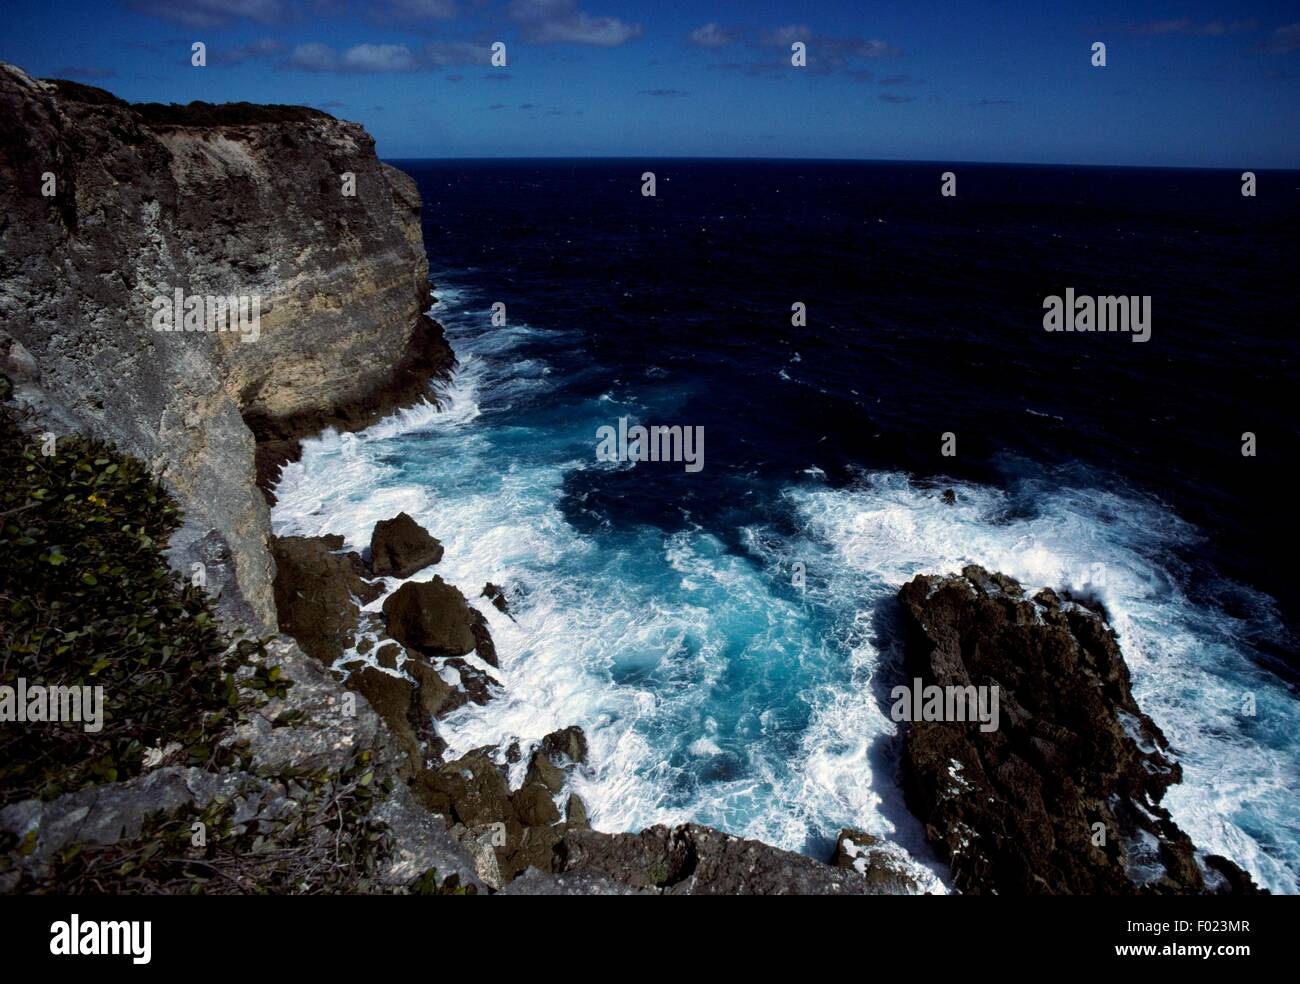 Alta e costa rocciosa, Guadalupa (dipartimento francese d' oltremare). Foto Stock